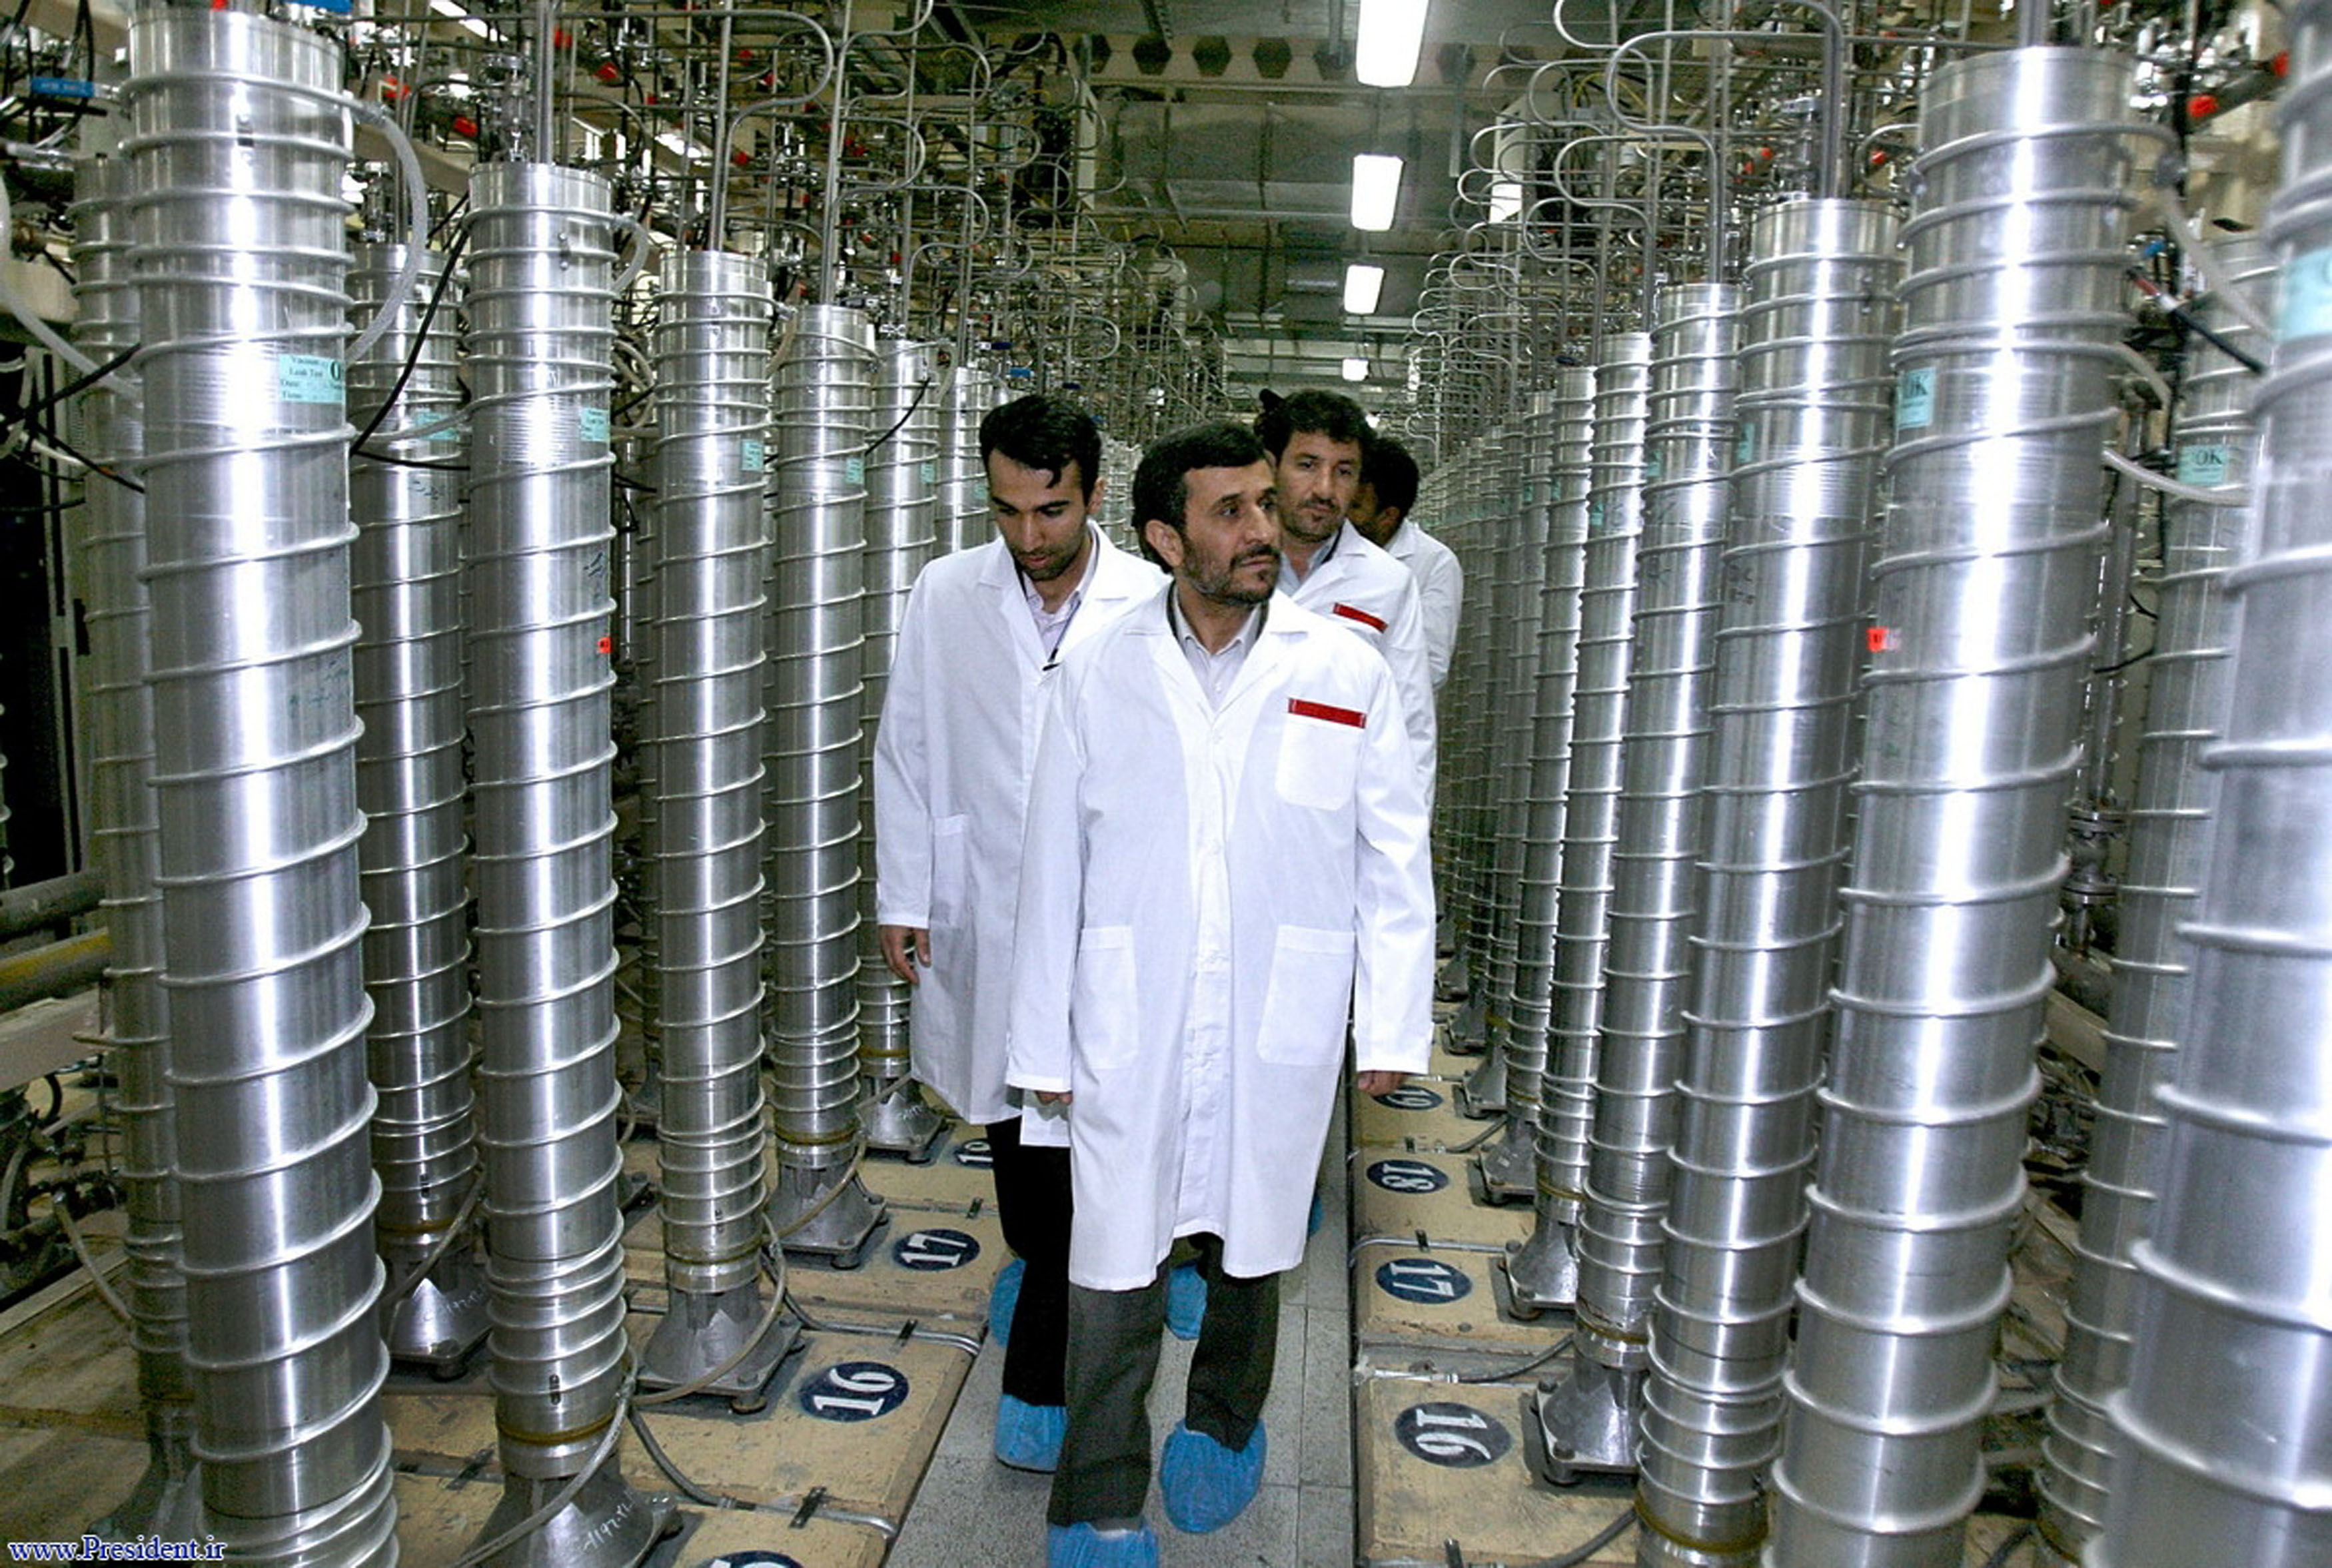 Former Iranian President Mahmoud Ahmadinejad tours the centrifuge facility at Natanz in 2008.